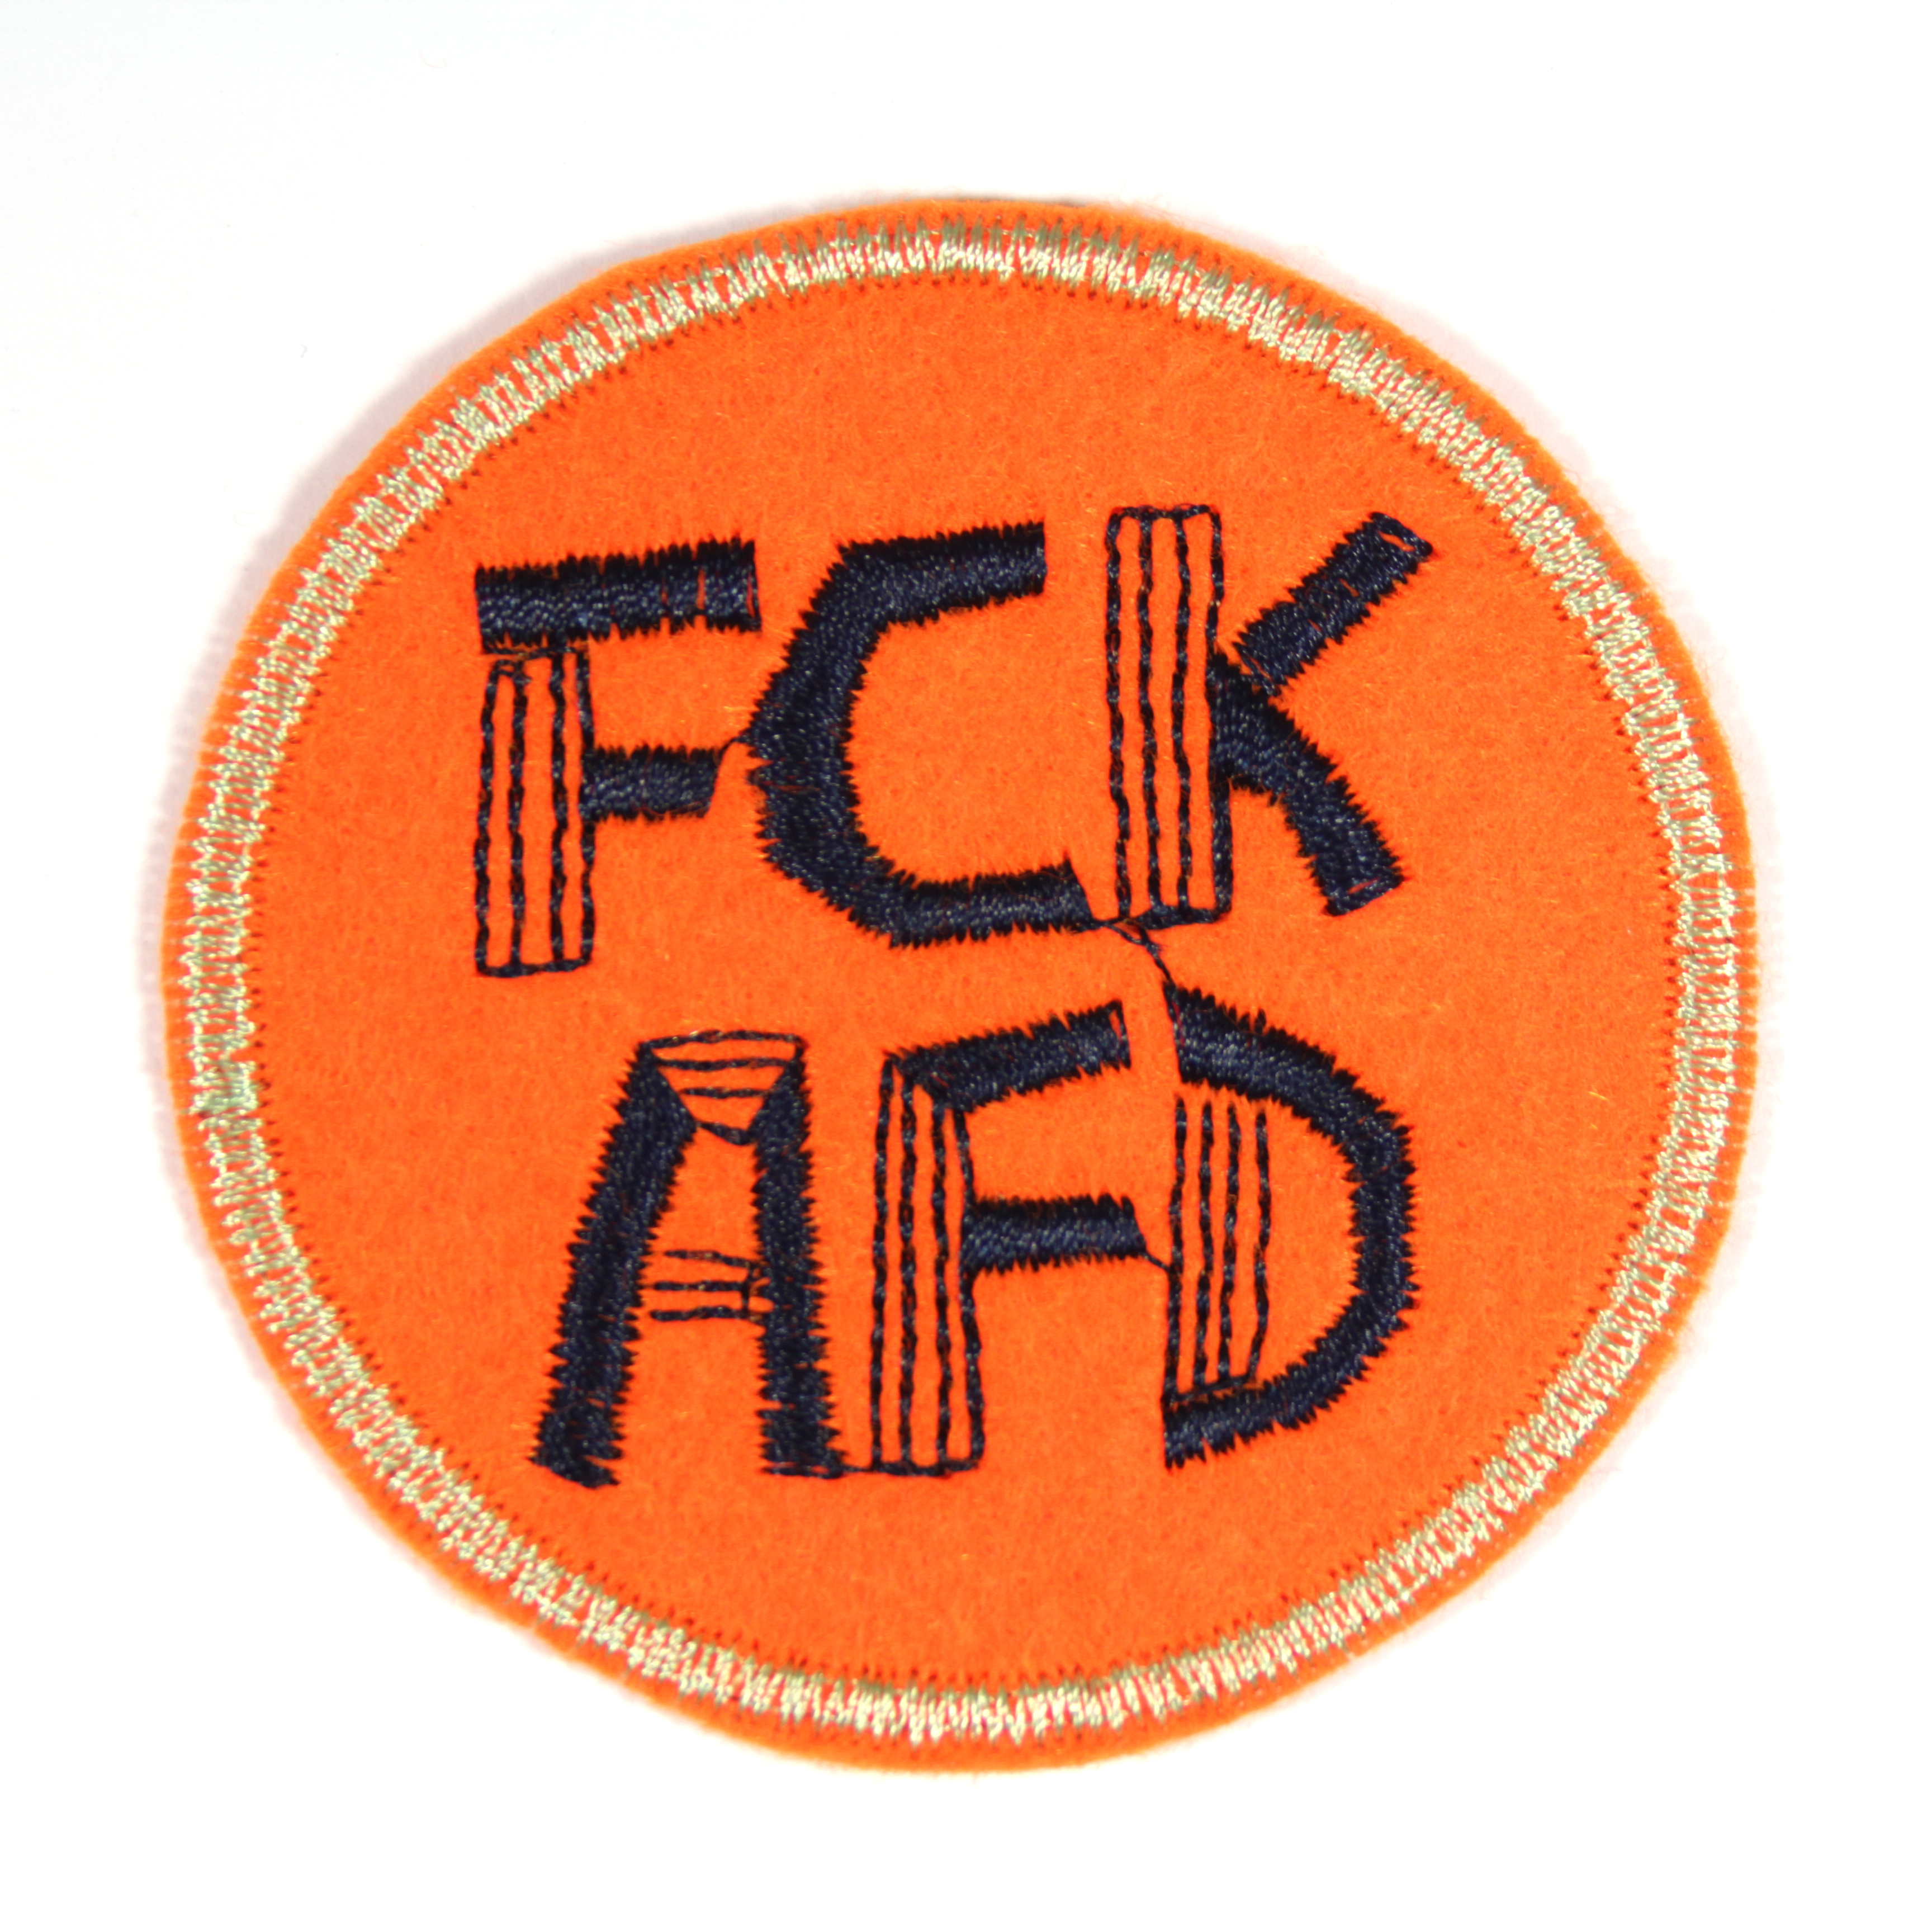 Aufnäher rund FCK AFD auf orange mit neon hellorange rand